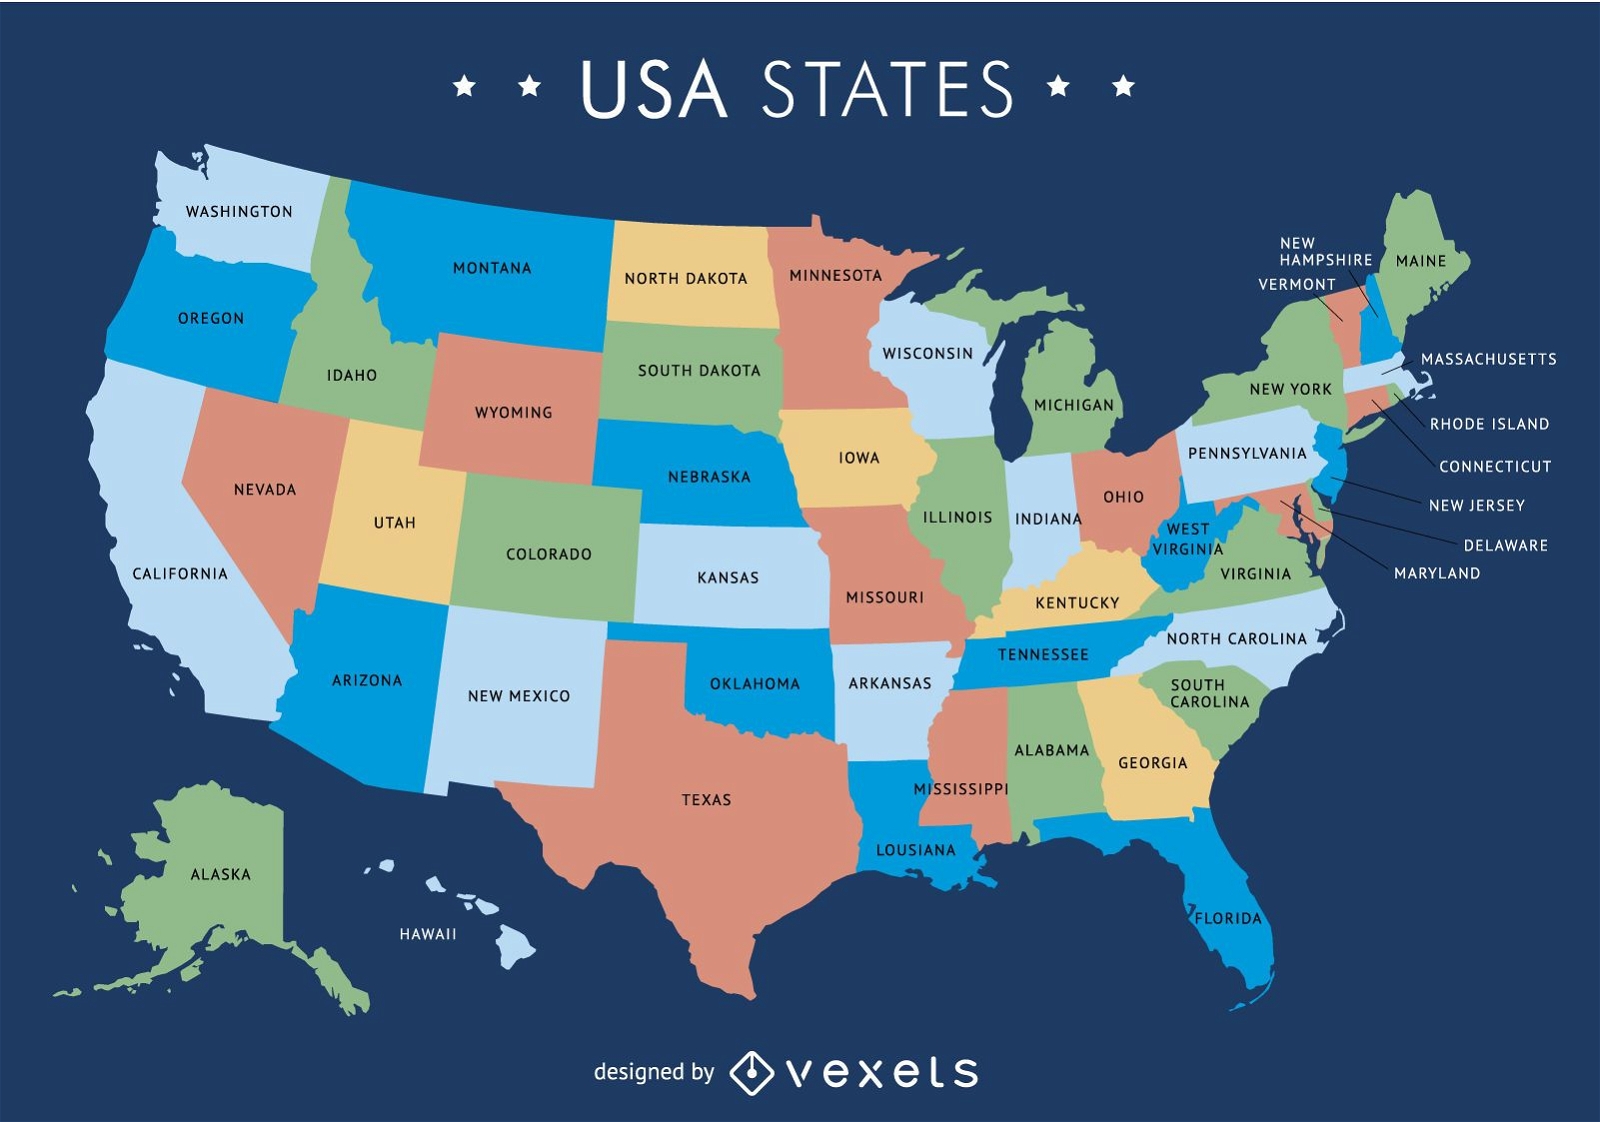 Mapa De Estados Unidos Con Nombres Y Sus Capitales, 41 OFF